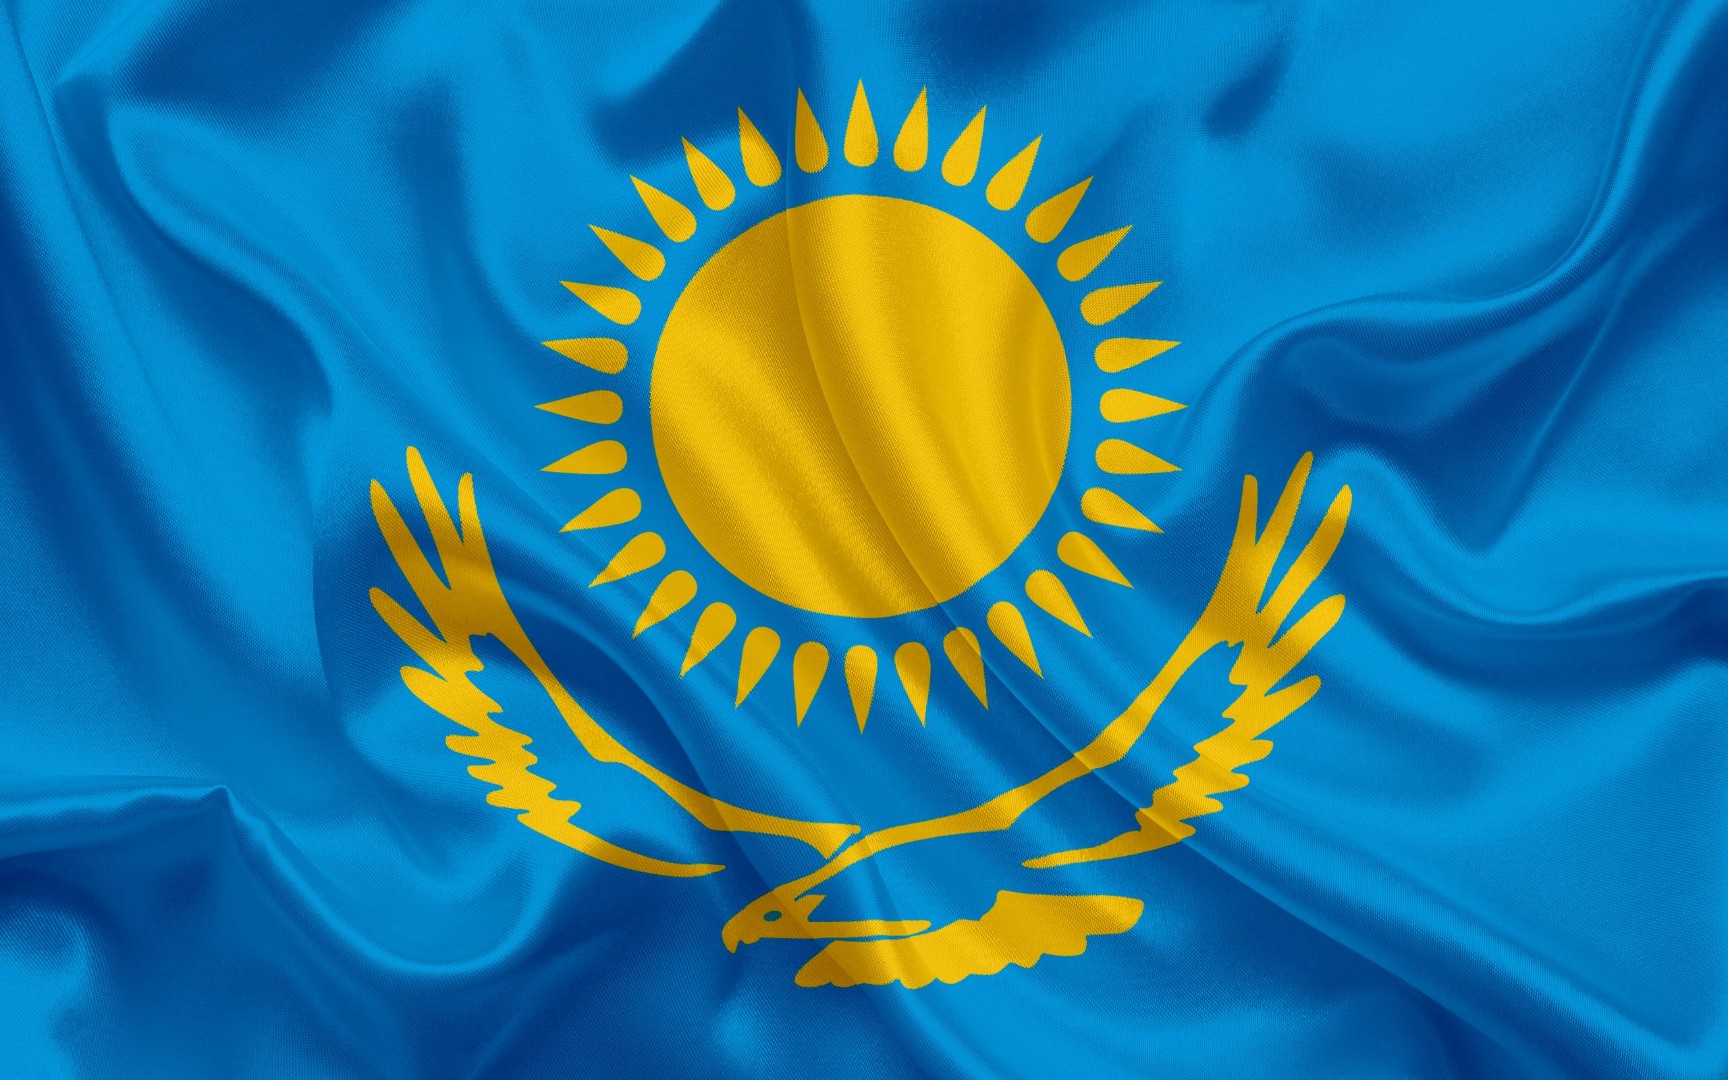 Поголовье КРС в Казахстане сократилось почти на 2 млн голов: в МСХ актуализировали данные